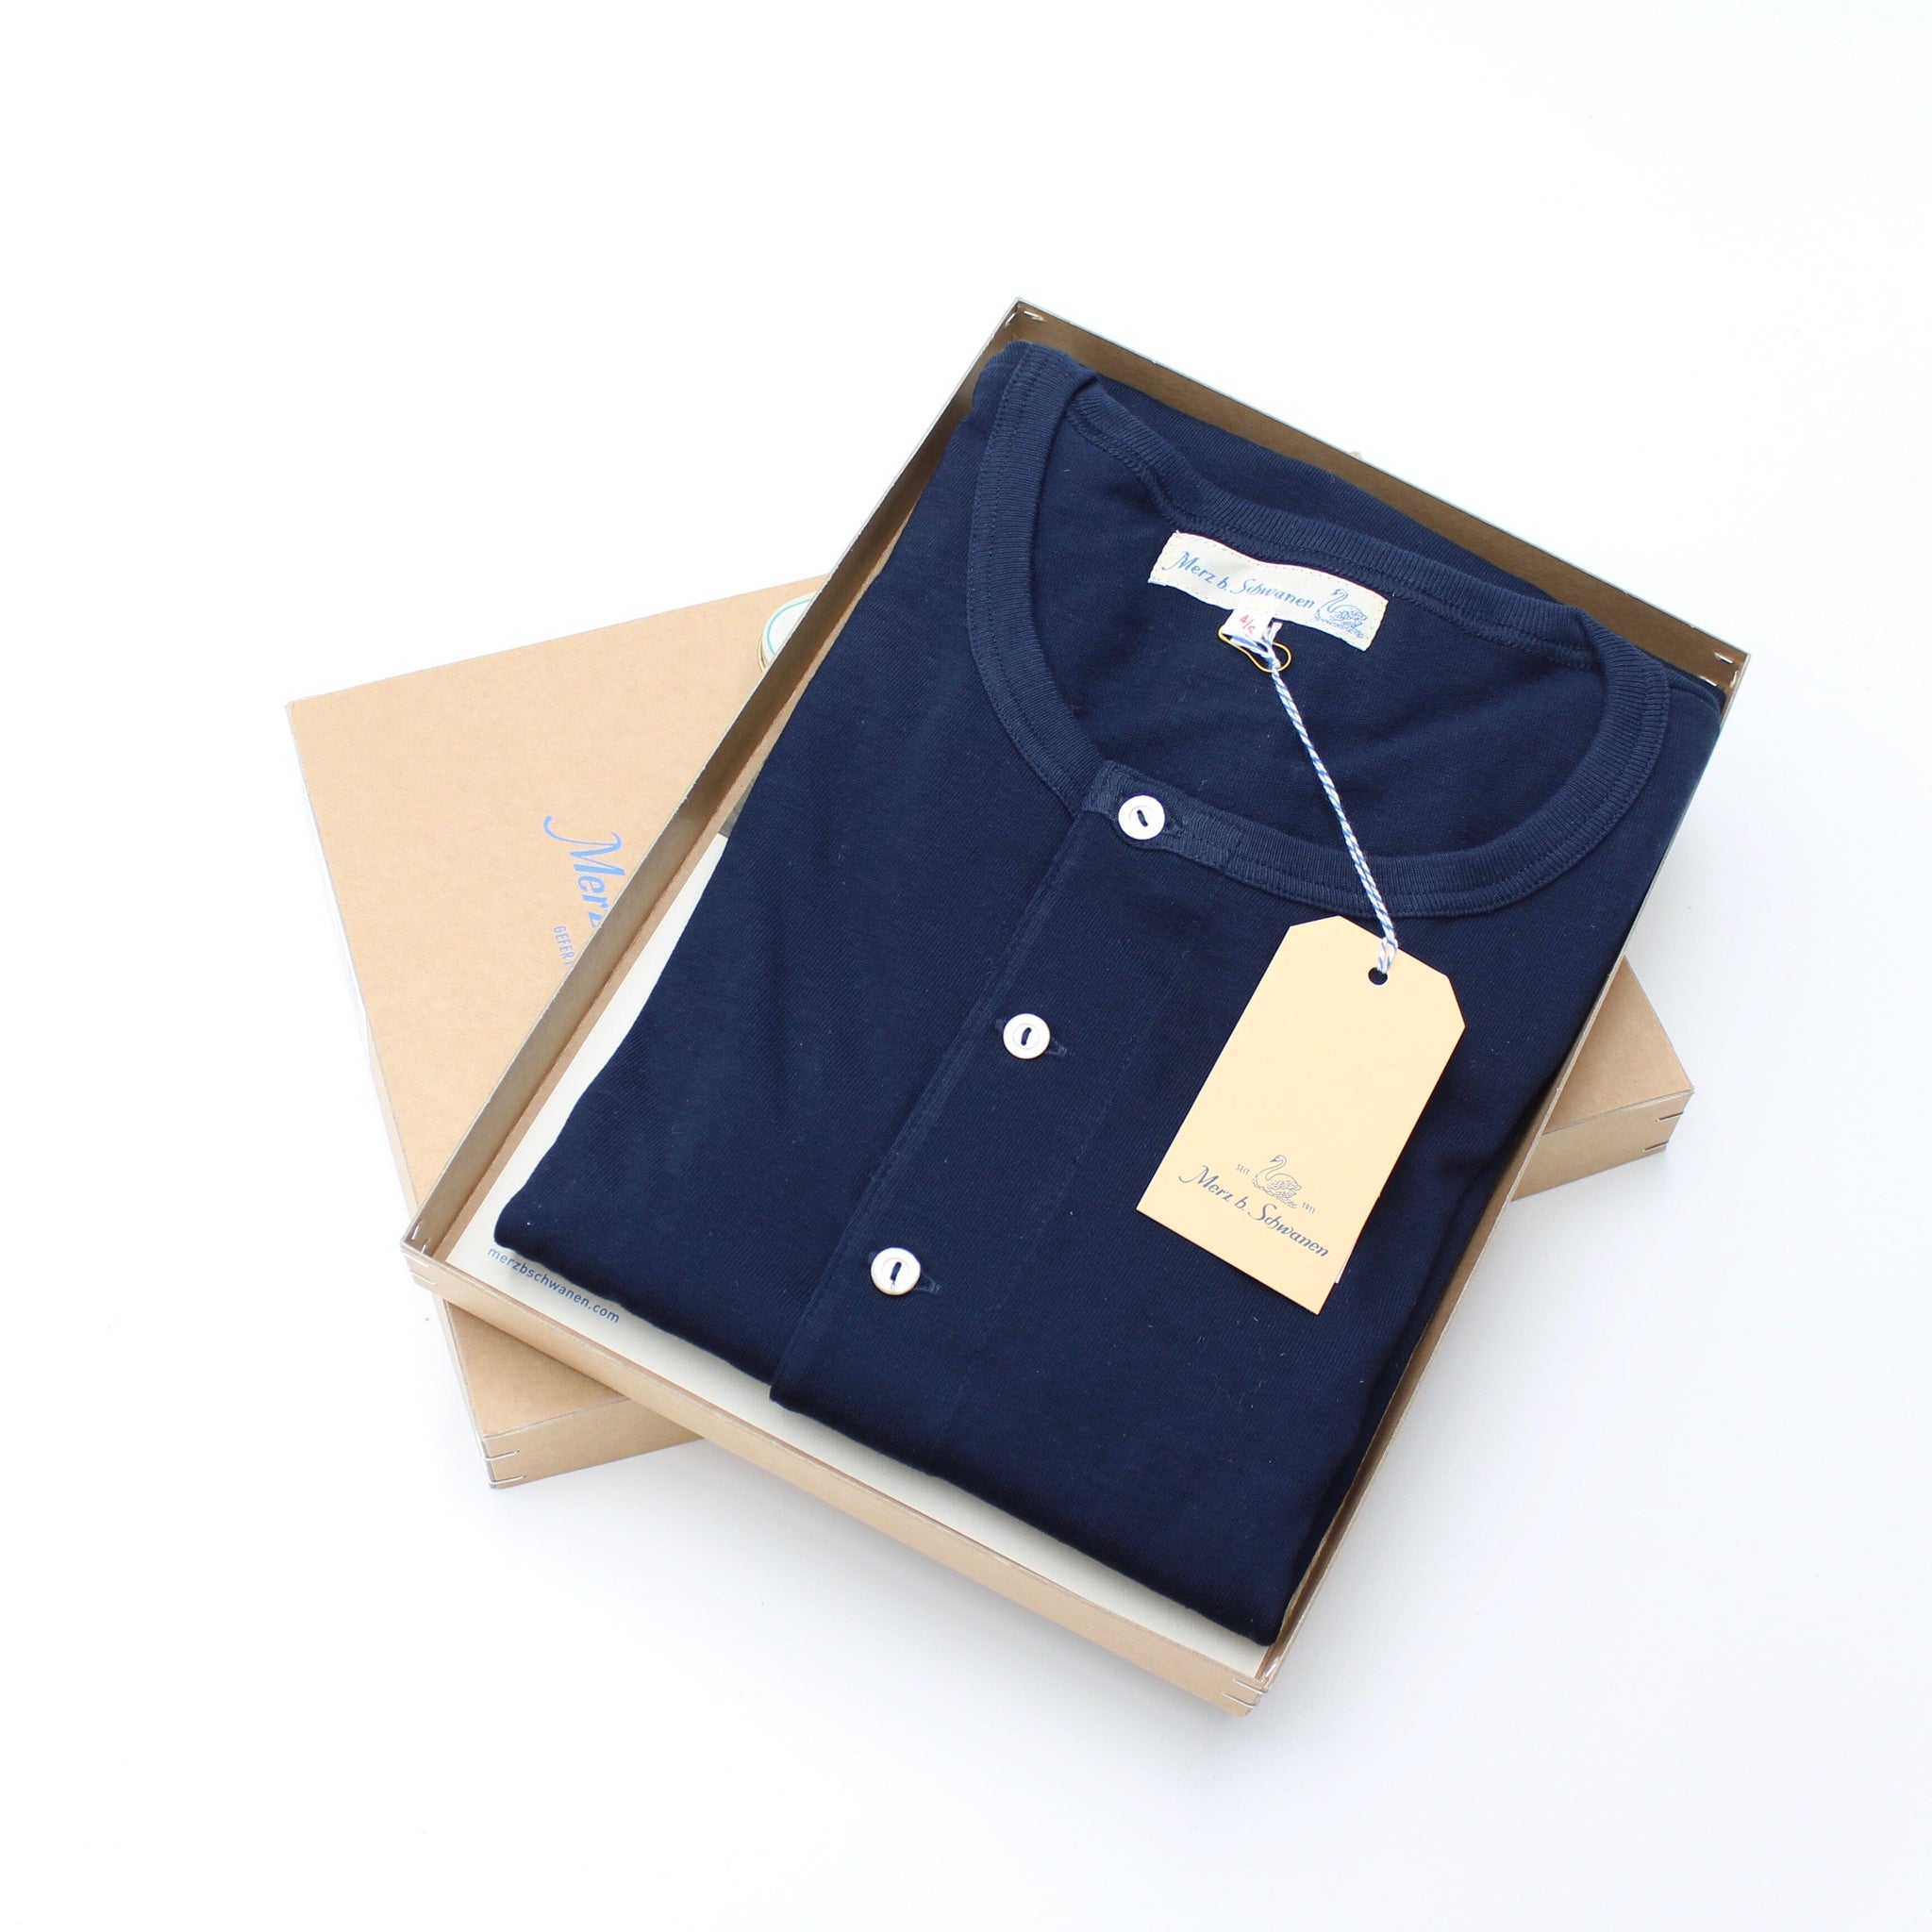 Shirt - Langarm - Farbe dunkelblau Atelier Treger 